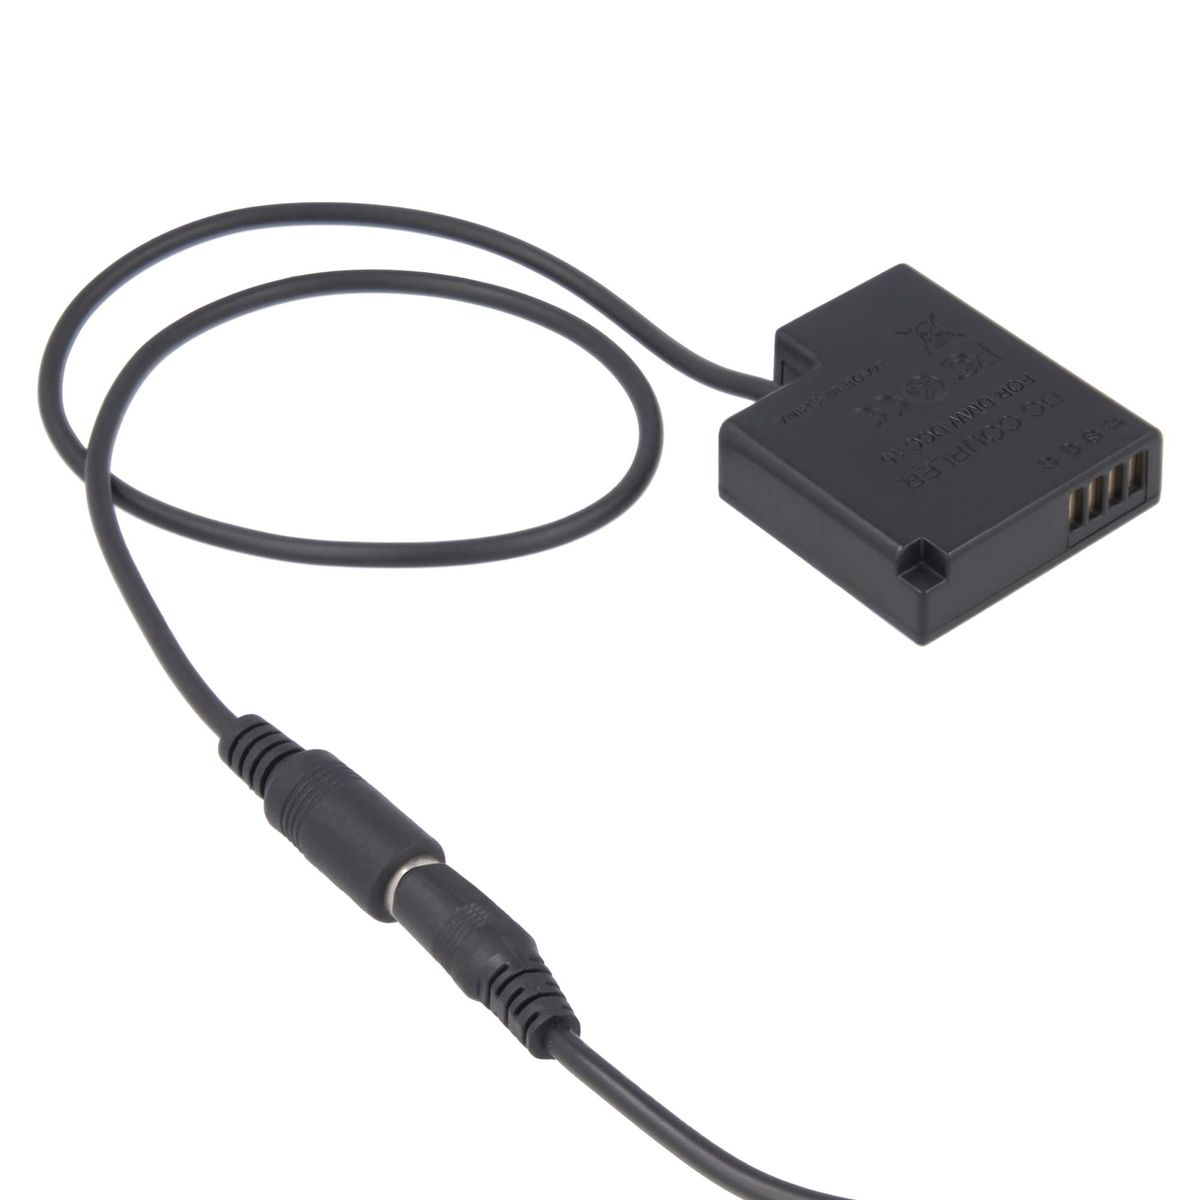 AKKU-KING USB Adapter + Kuppler Panasonic keine Ladegerät kompatibel DCC15 mit Panasonic, Angabe